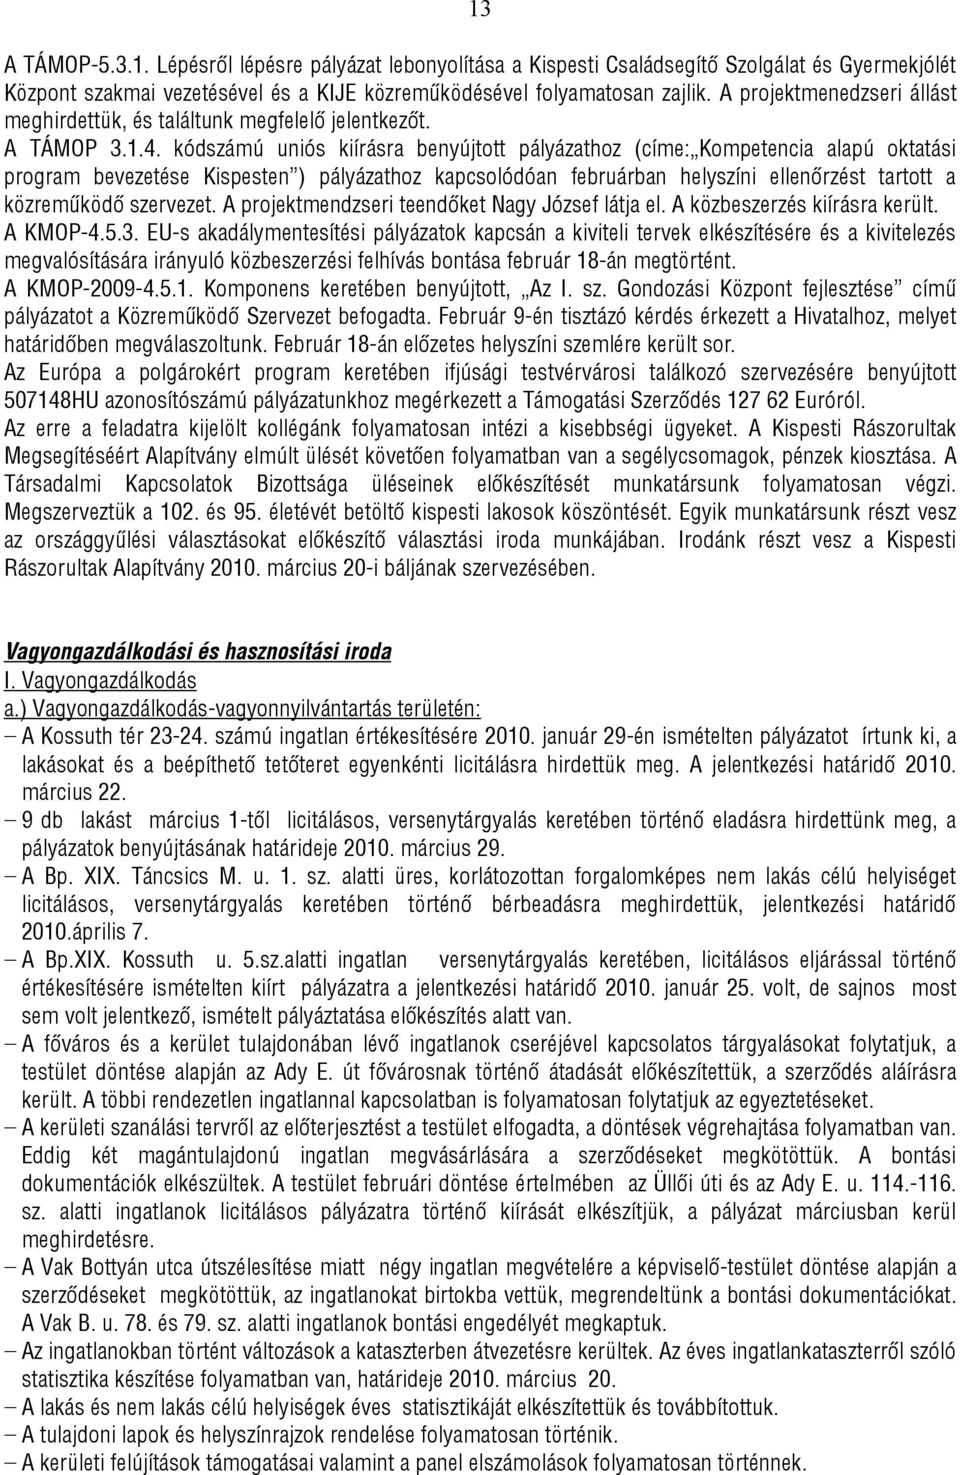 kódszámú uniós kiírásra benyújtott pályázathoz (címe: Kompetencia alapú oktatási program bevezetése Kispesten ) pályázathoz kapcsolódóan februárban helyszíni ellenőrzést tartott a közreműködő